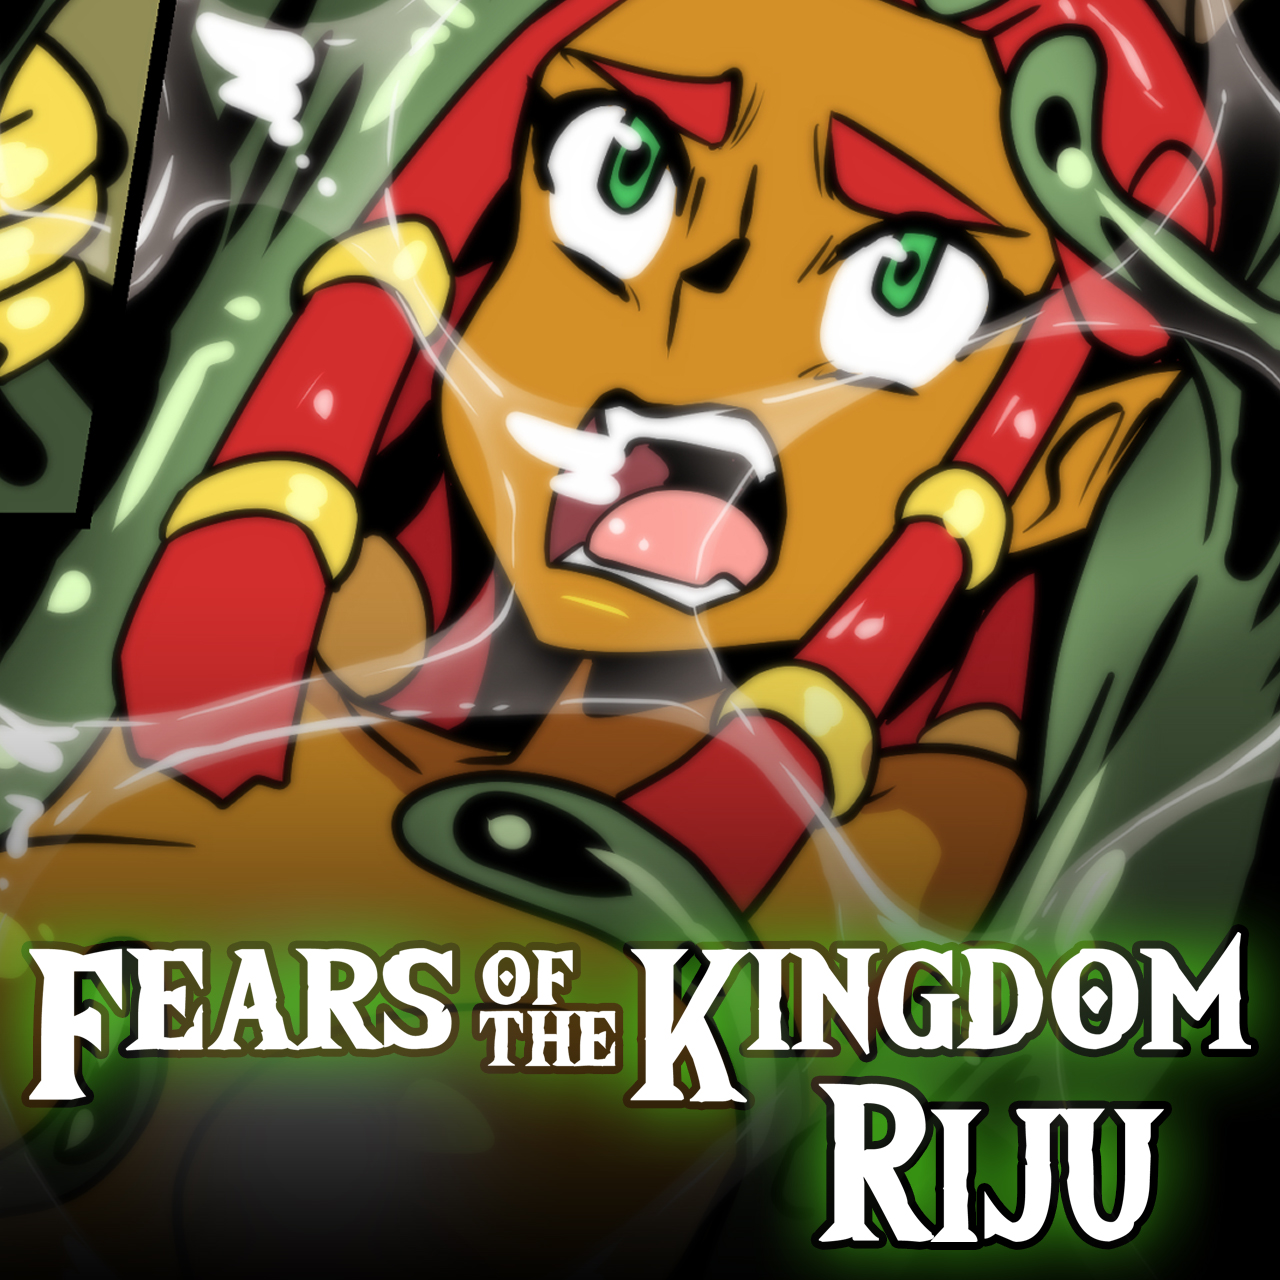 Fears of the Kingdom: Riju